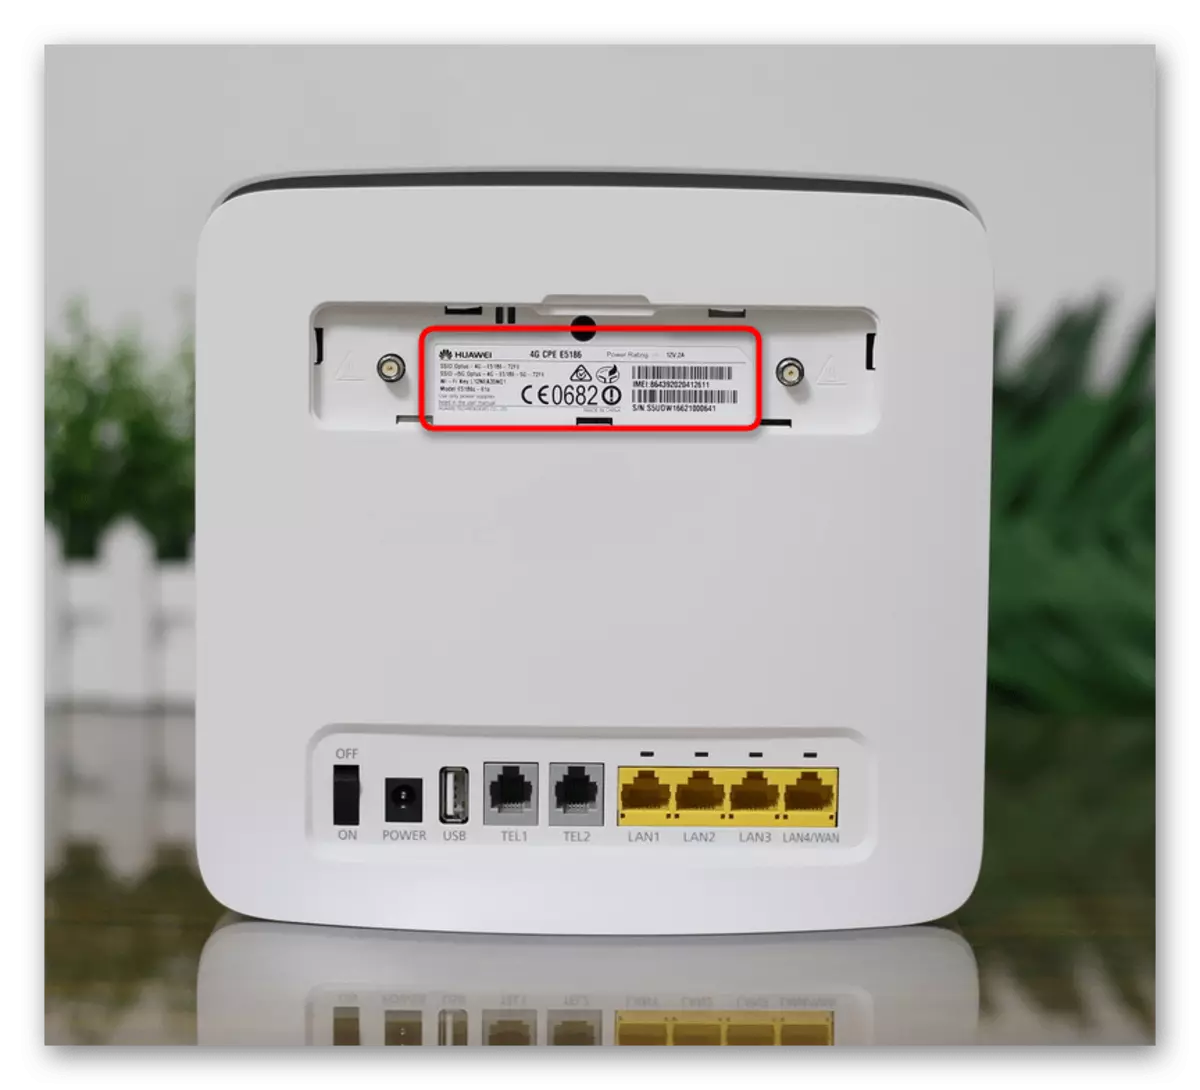 Mempelajari stiker pada router dari MTS sebelum menghubungkannya ke komputer melalui Wi-Fi